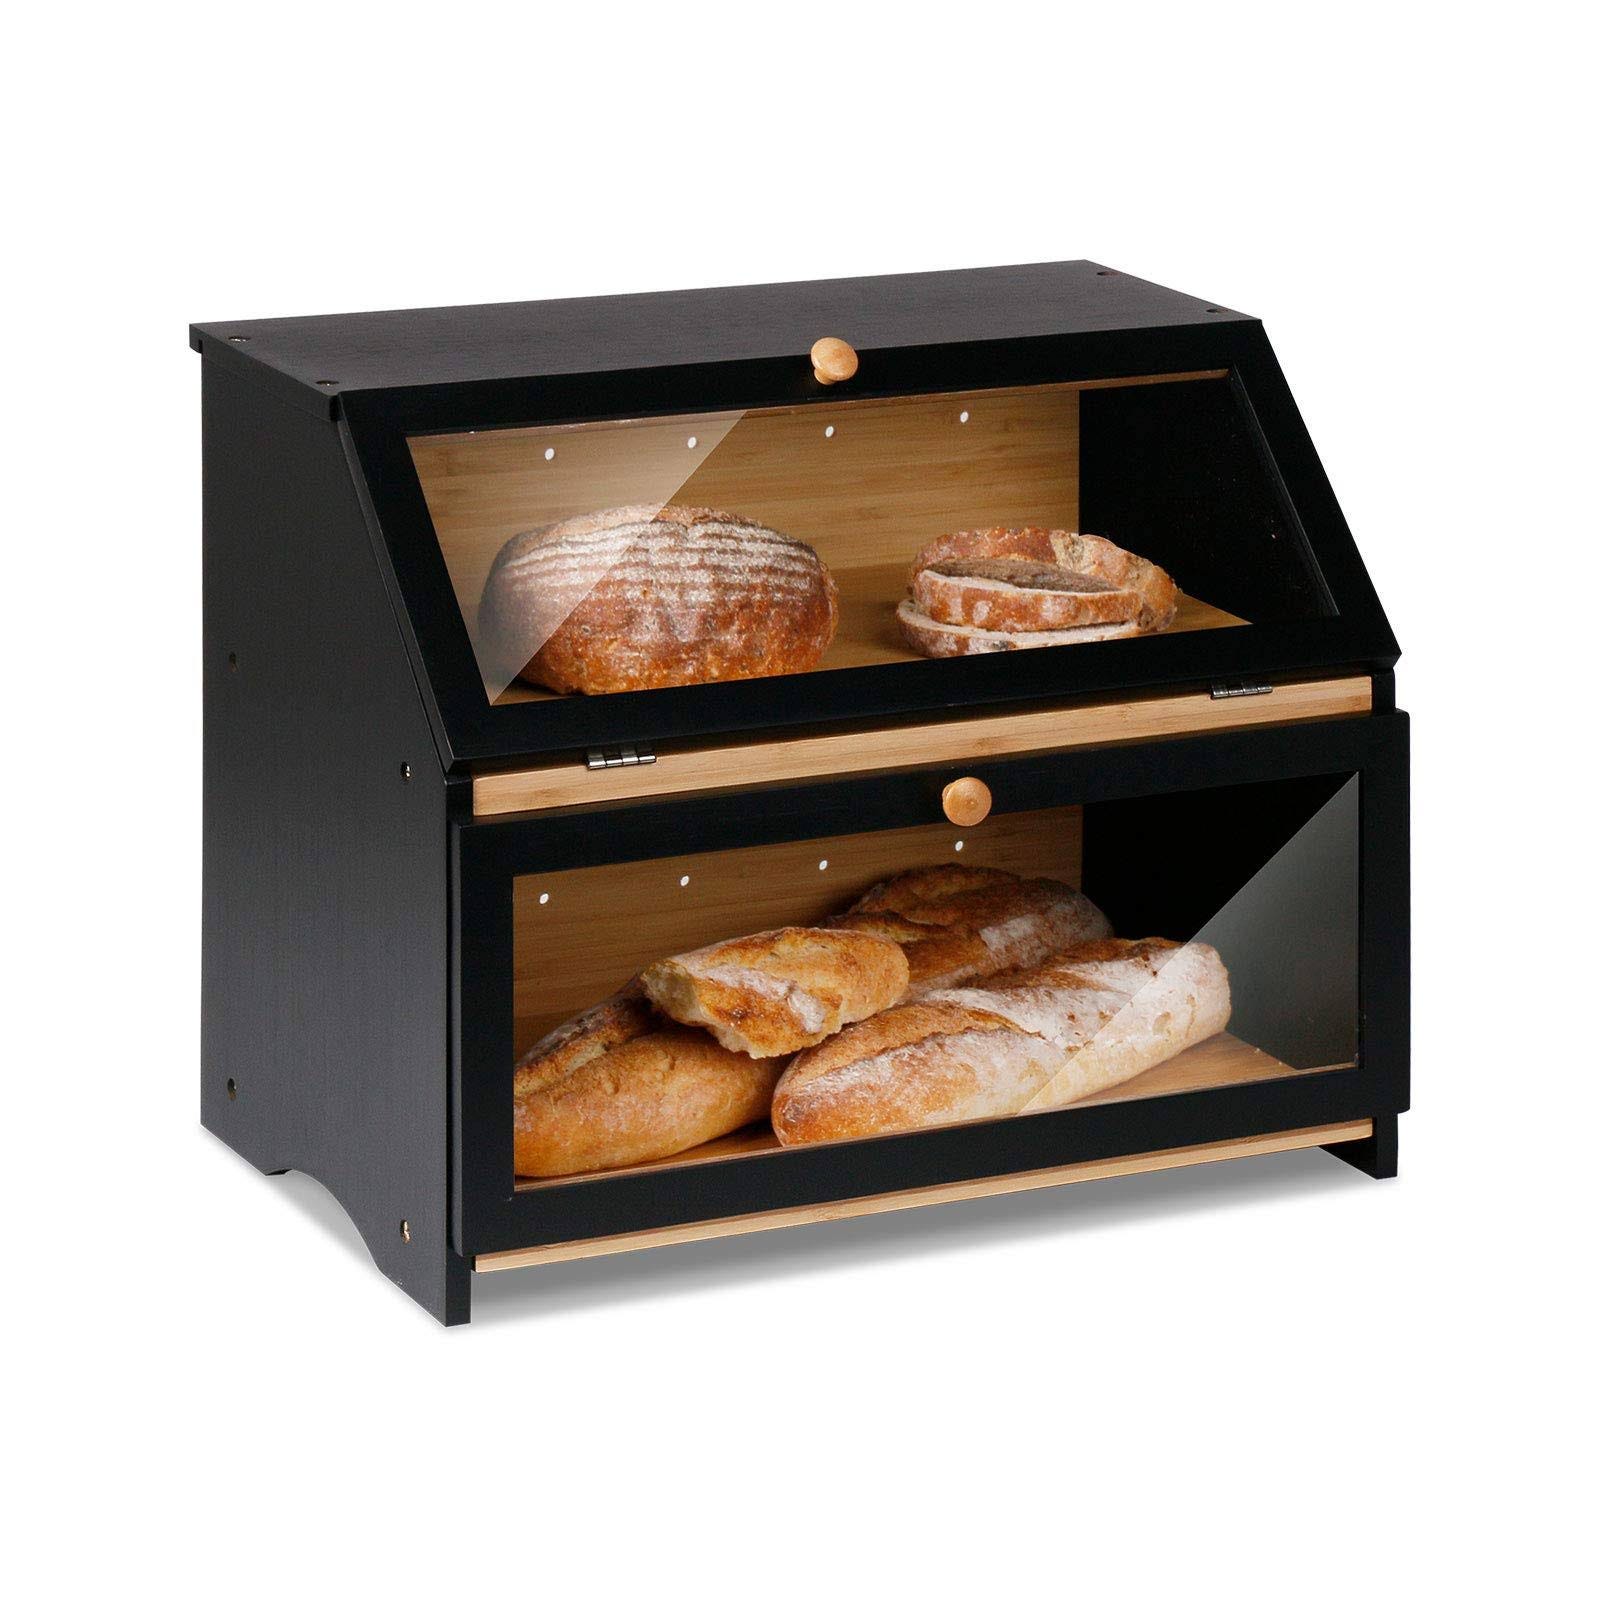 Large Capacity, Stylish Bread Storage Box | Image